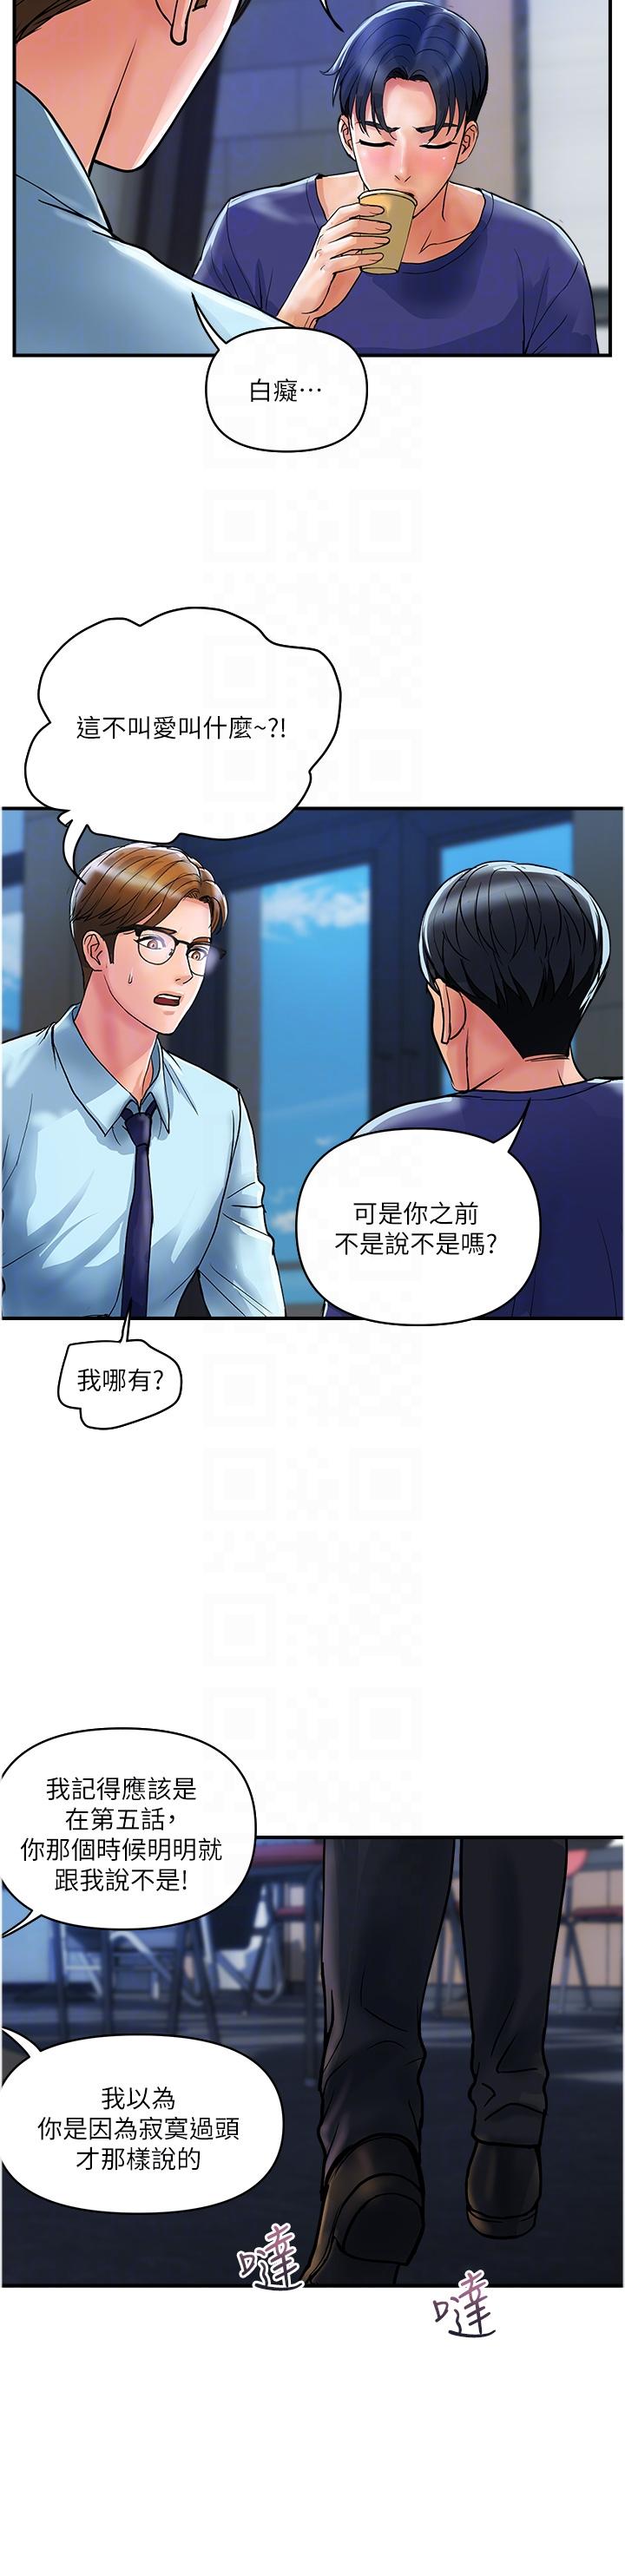 韩国污漫画 貴婦百貨 第20话-复杂的四角恋 18